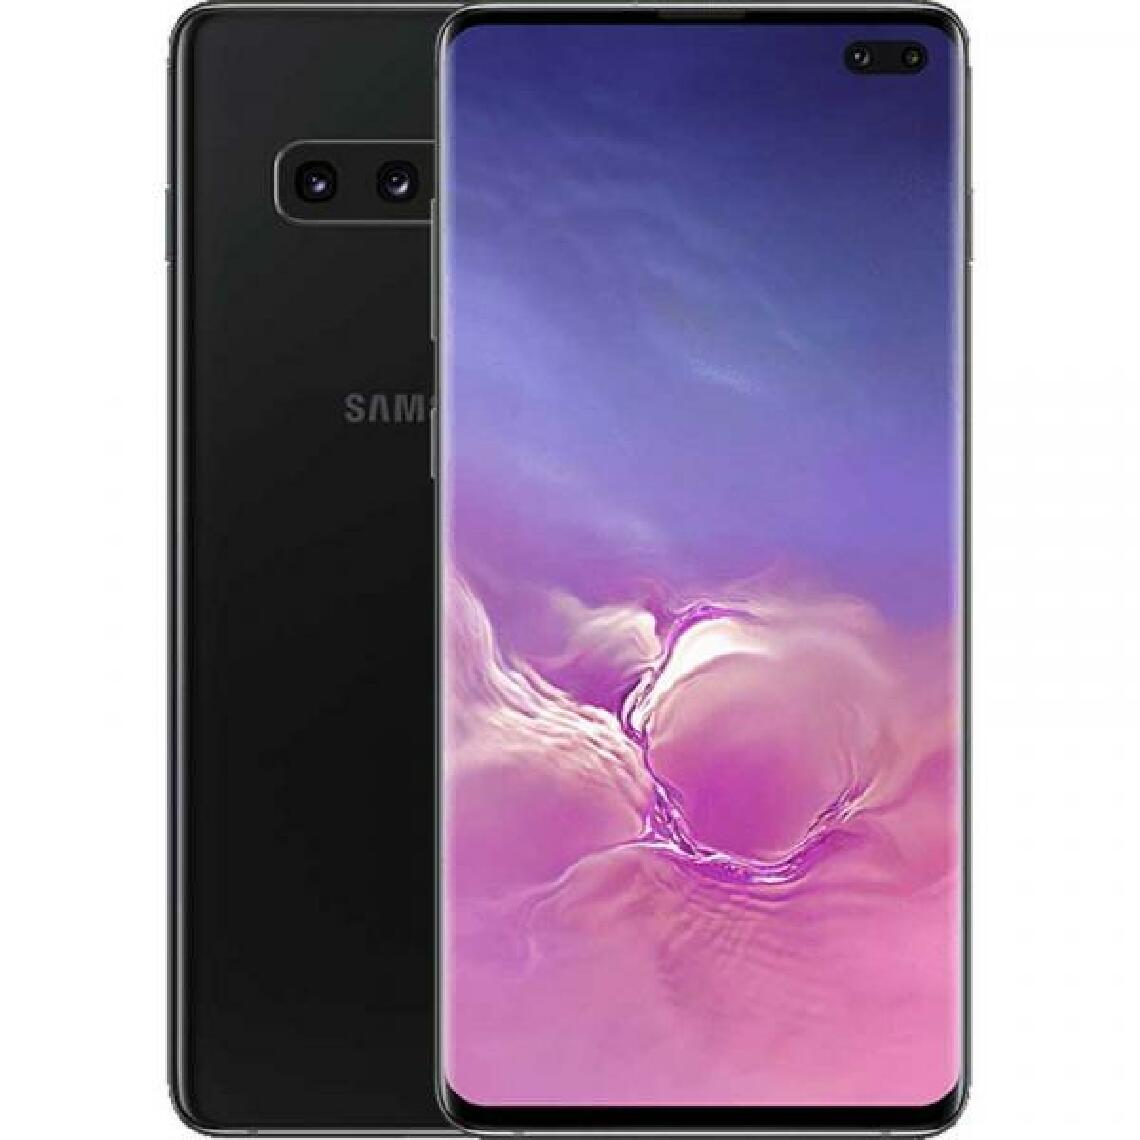 Samsung - Samsung SM-G975F Galaxy S10+ Dual Sim 128GB prism black DACH - Smartphone Android